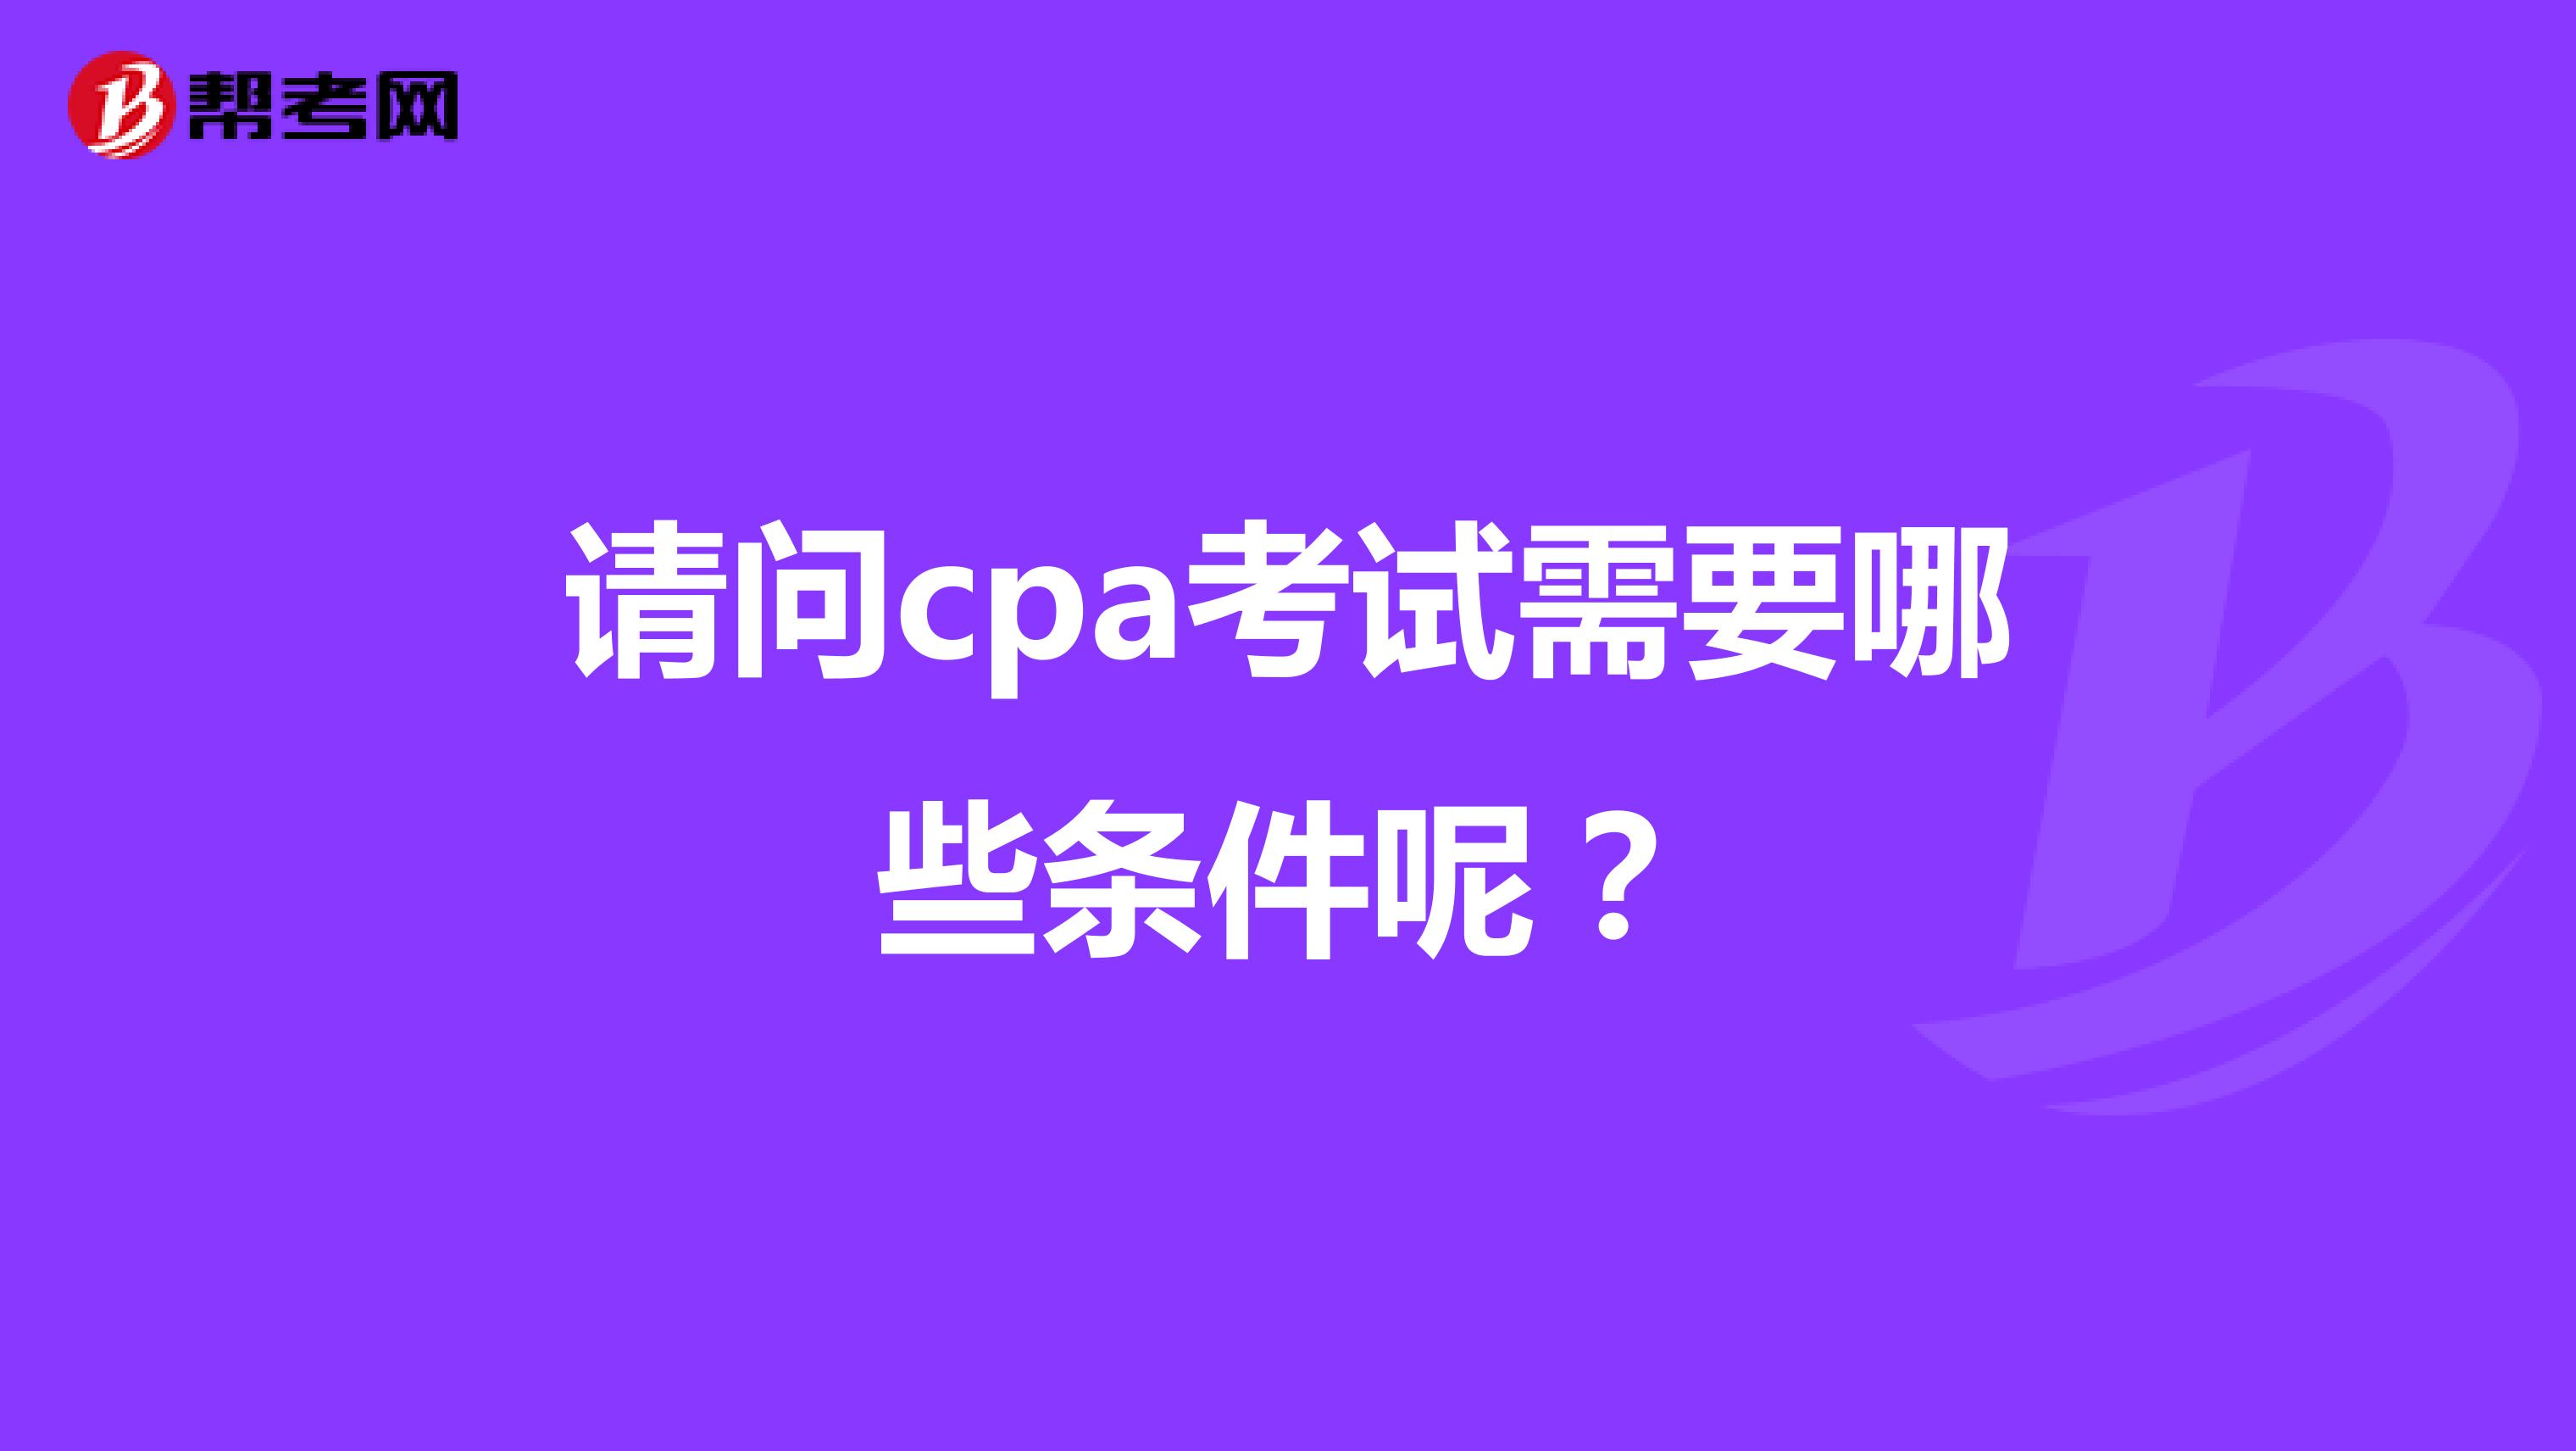 请问cpa考试需要哪些条件呢？